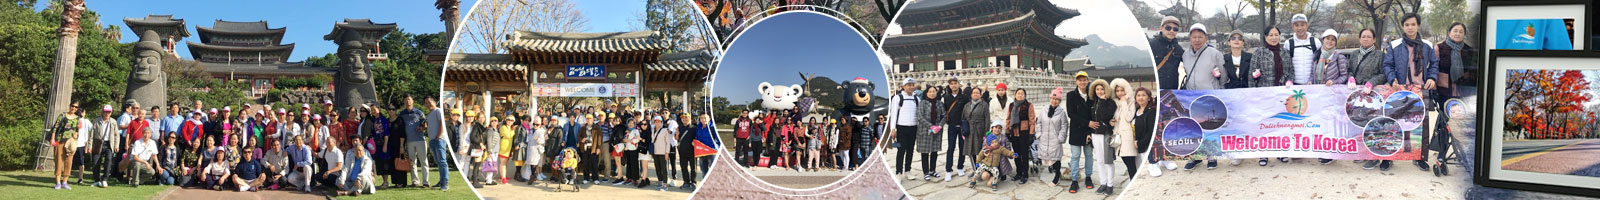 Tour du lịch Nhật Bản 6N5Đ - Từ TPHCM giá trọn gói 2020